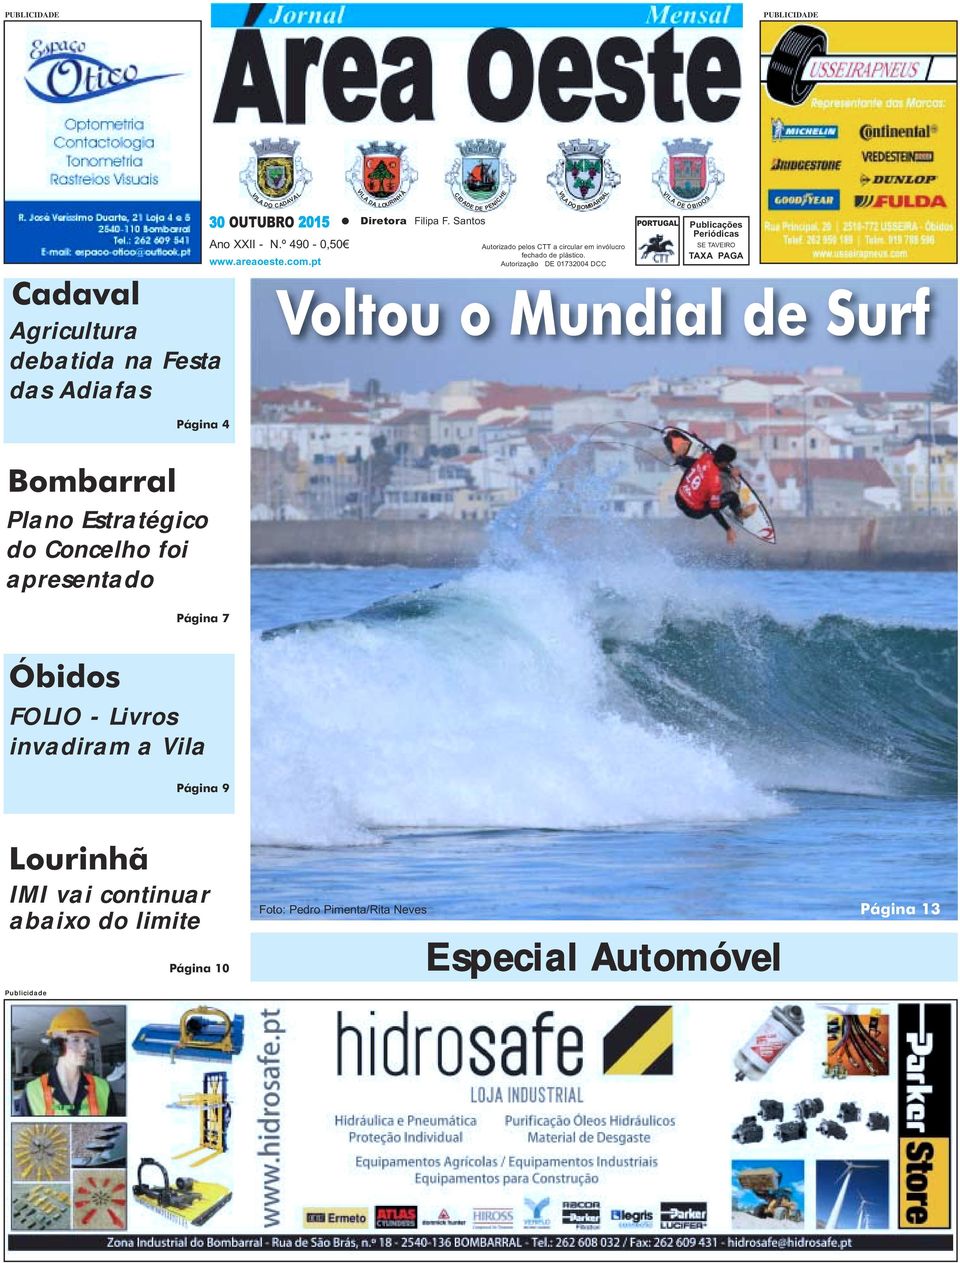 Autorização DE DCC VIL A PORTUGAL DE Ó BIDOS Publicações Periódicas SE TAVEIRO TAXA PAGA Voltou o Mundial de Surf Página Bombarral Plano Estratégico do